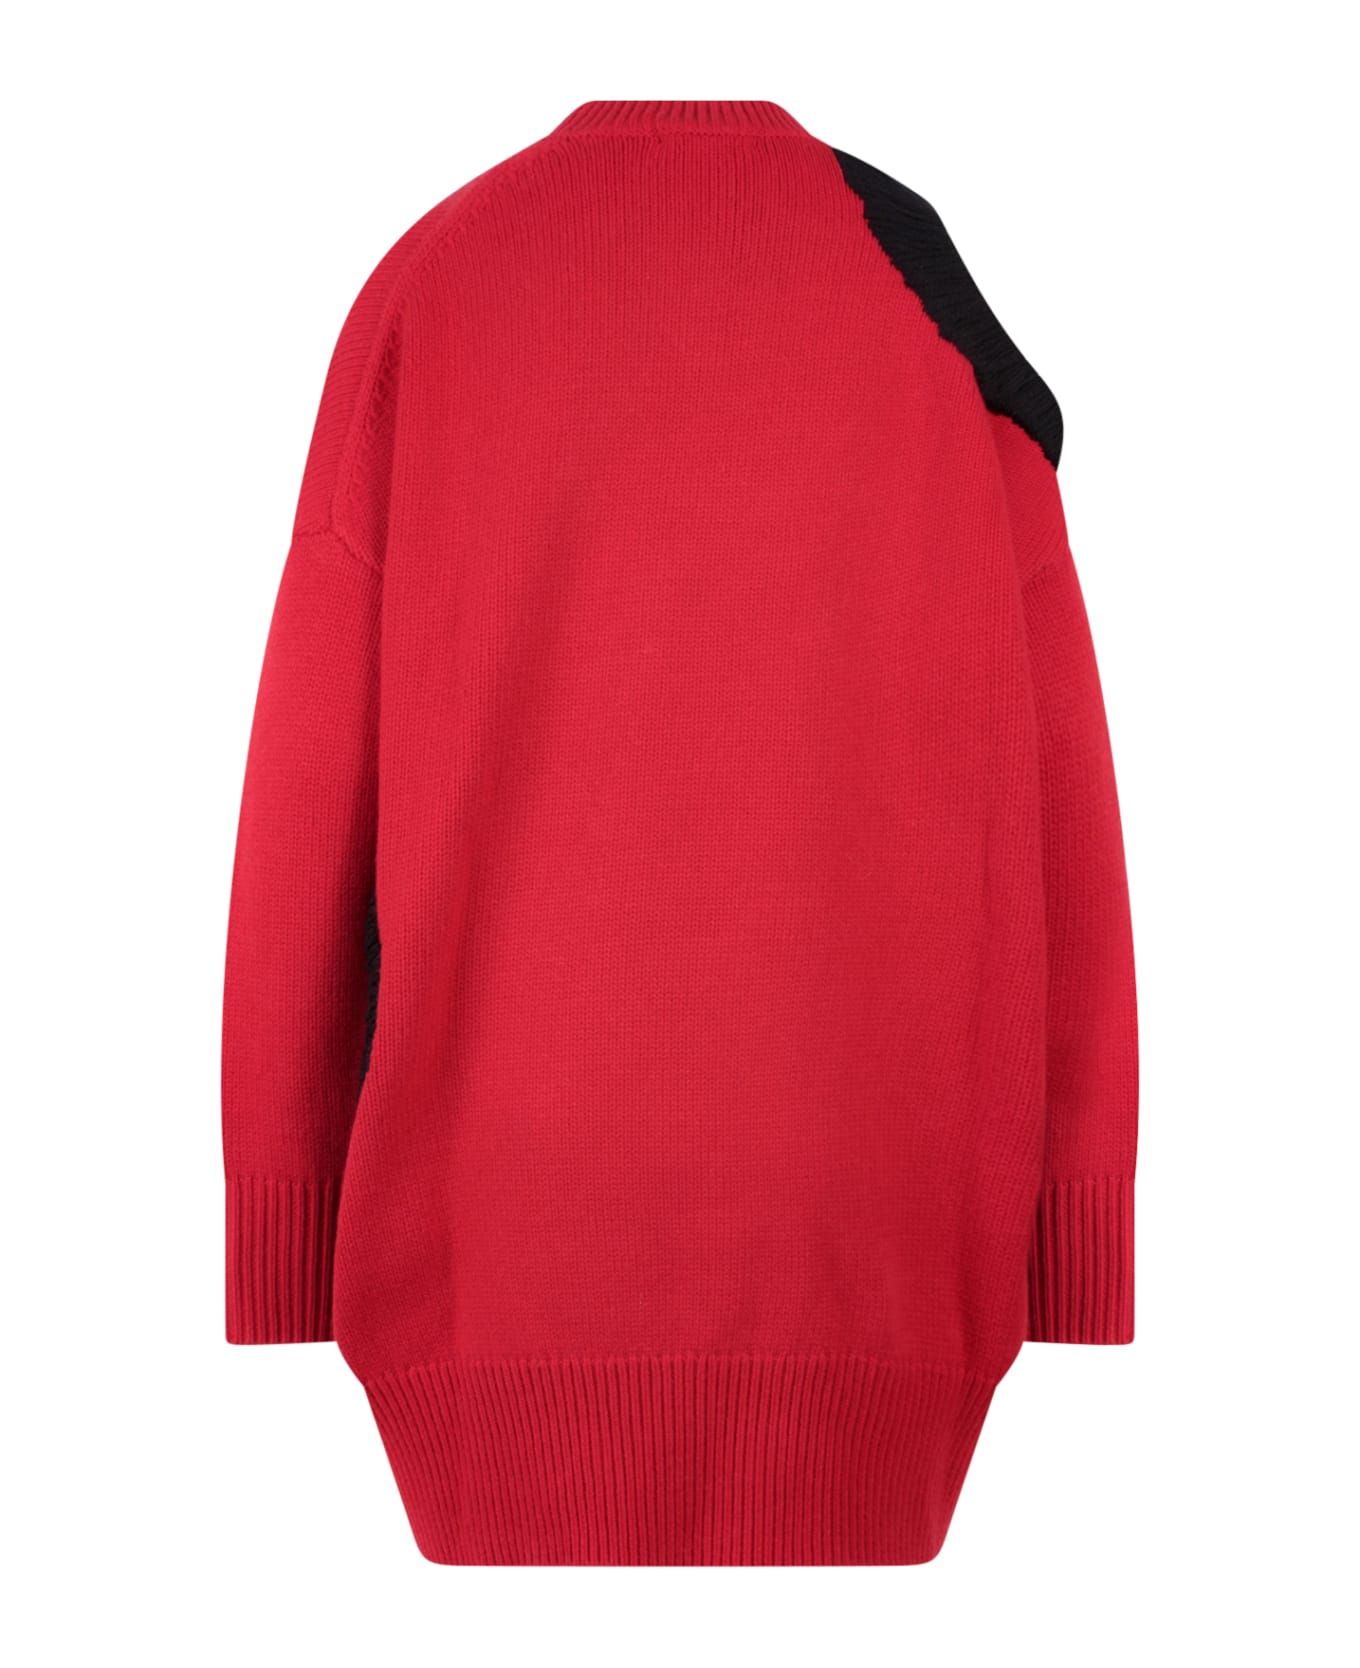 Krizia Sweater - Red ニットウェア